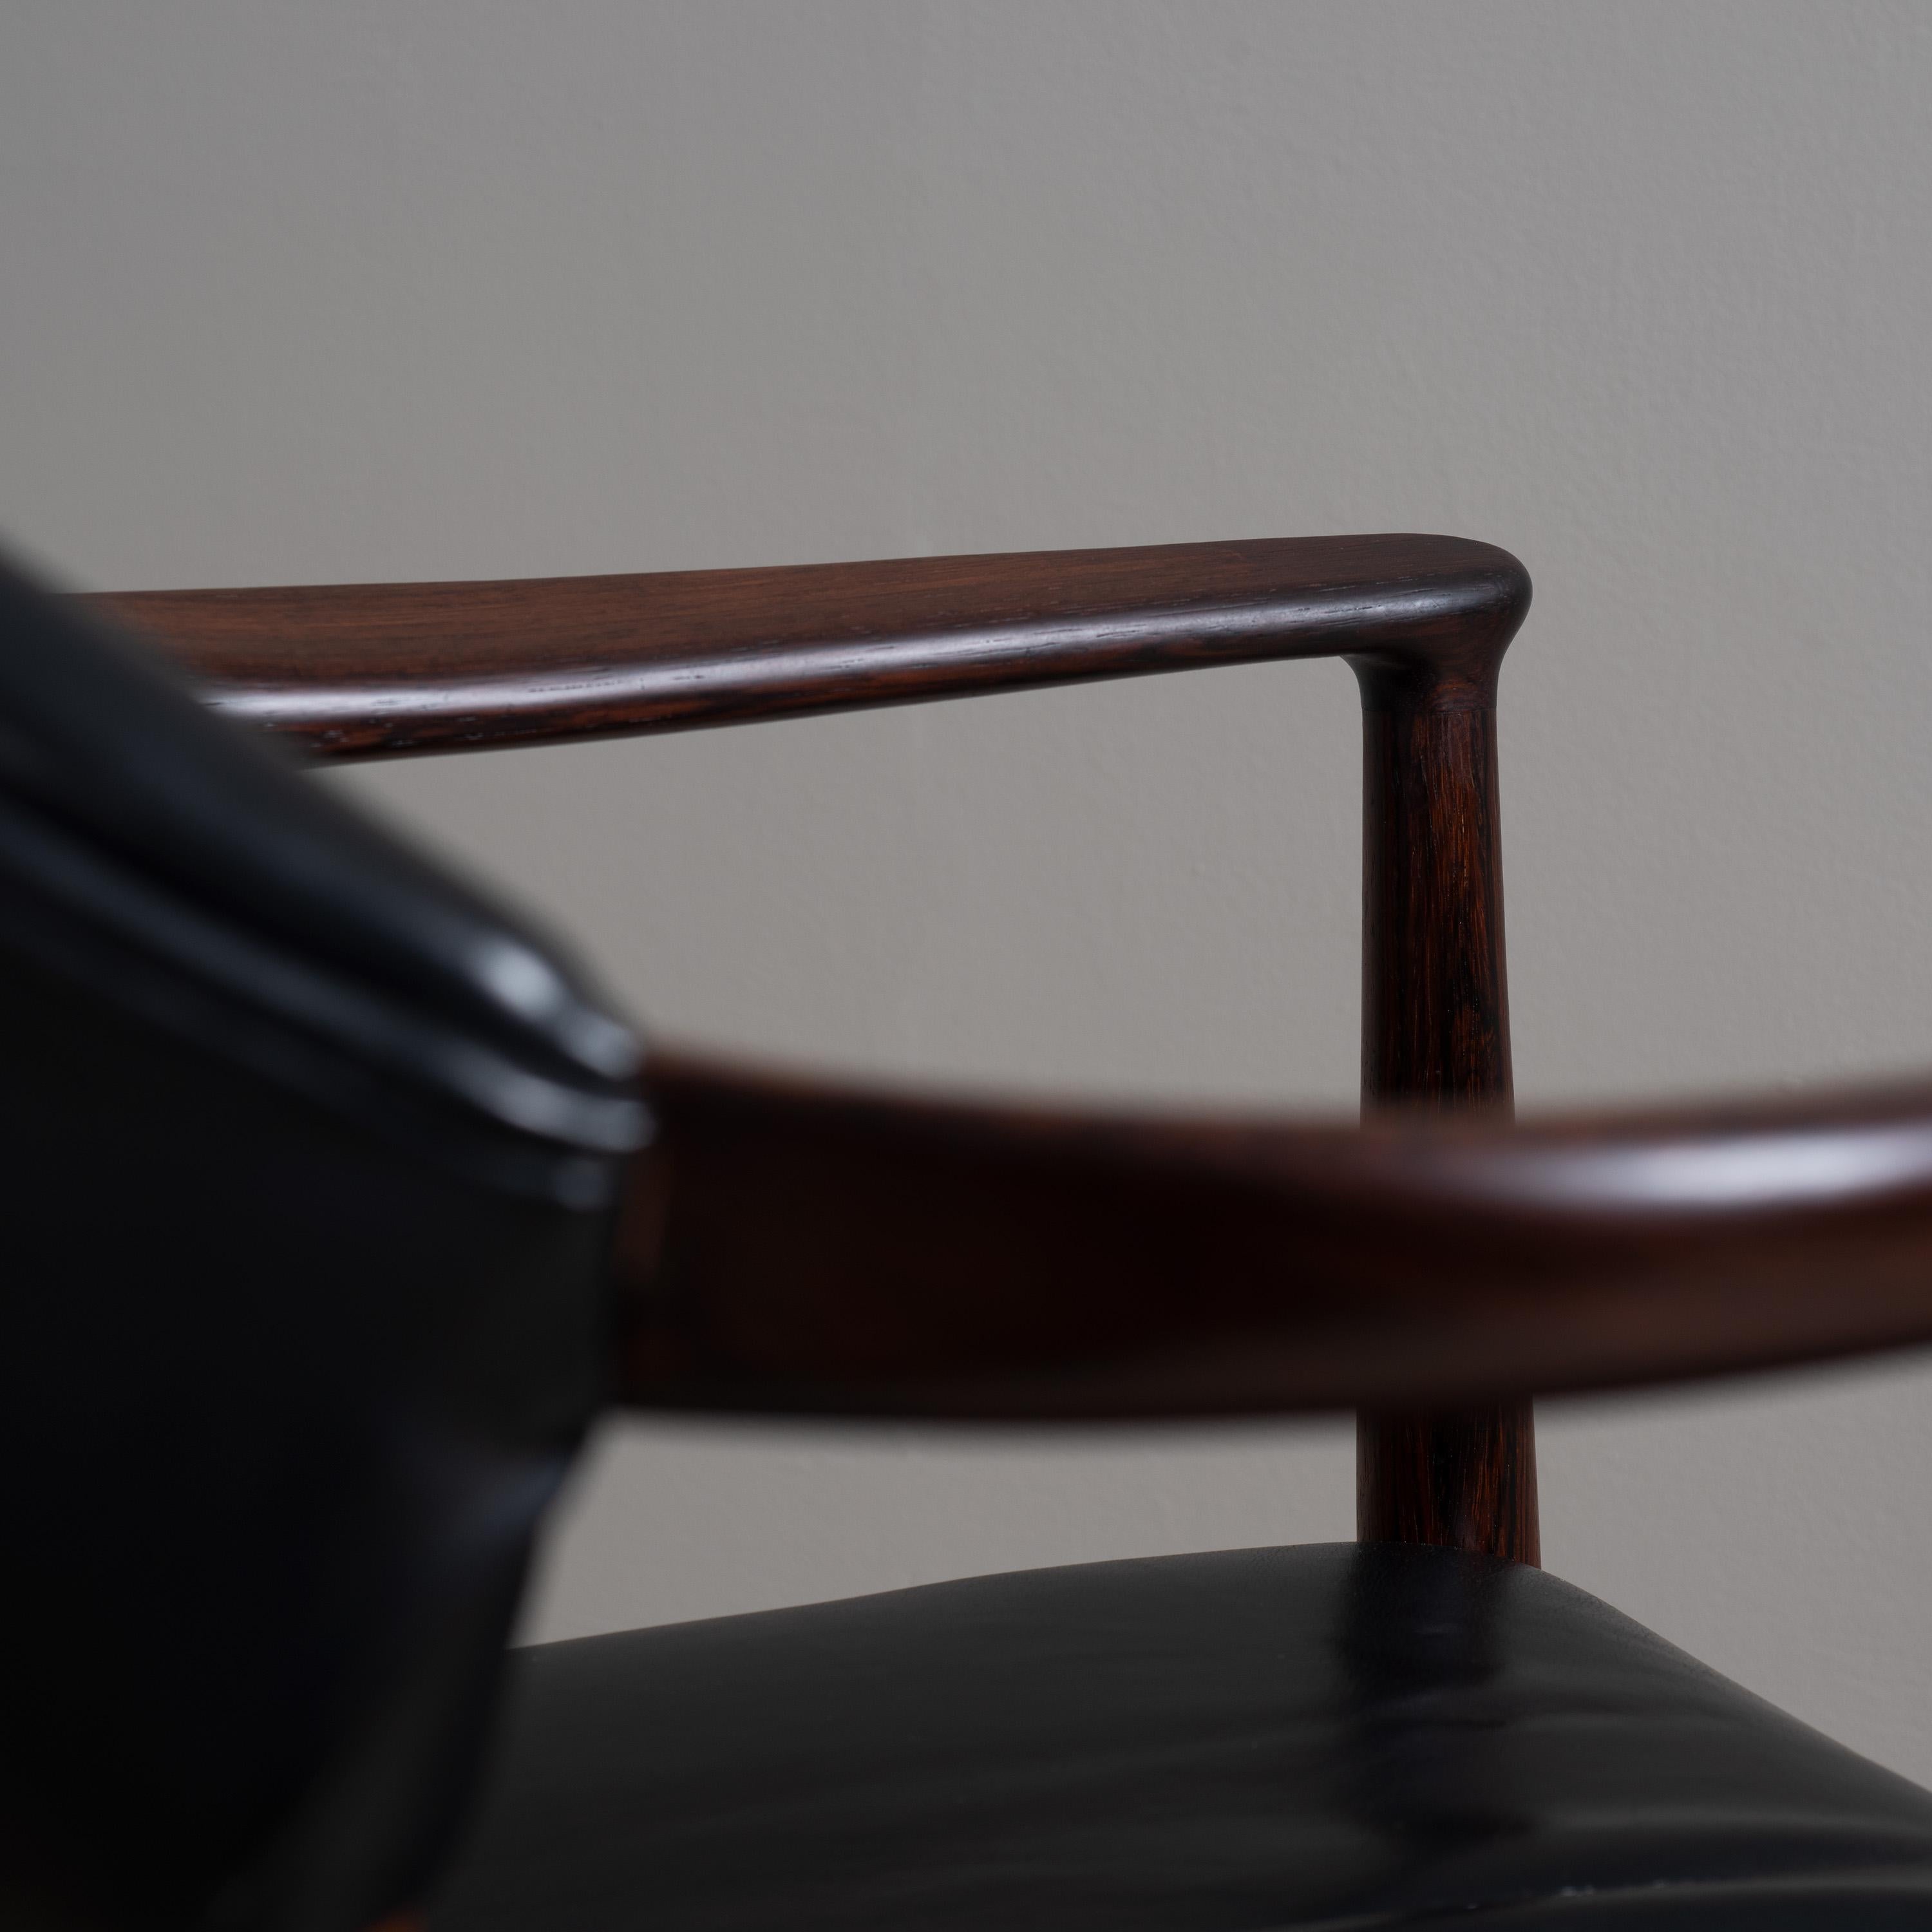  Kurt Olsen Leather Chair 1